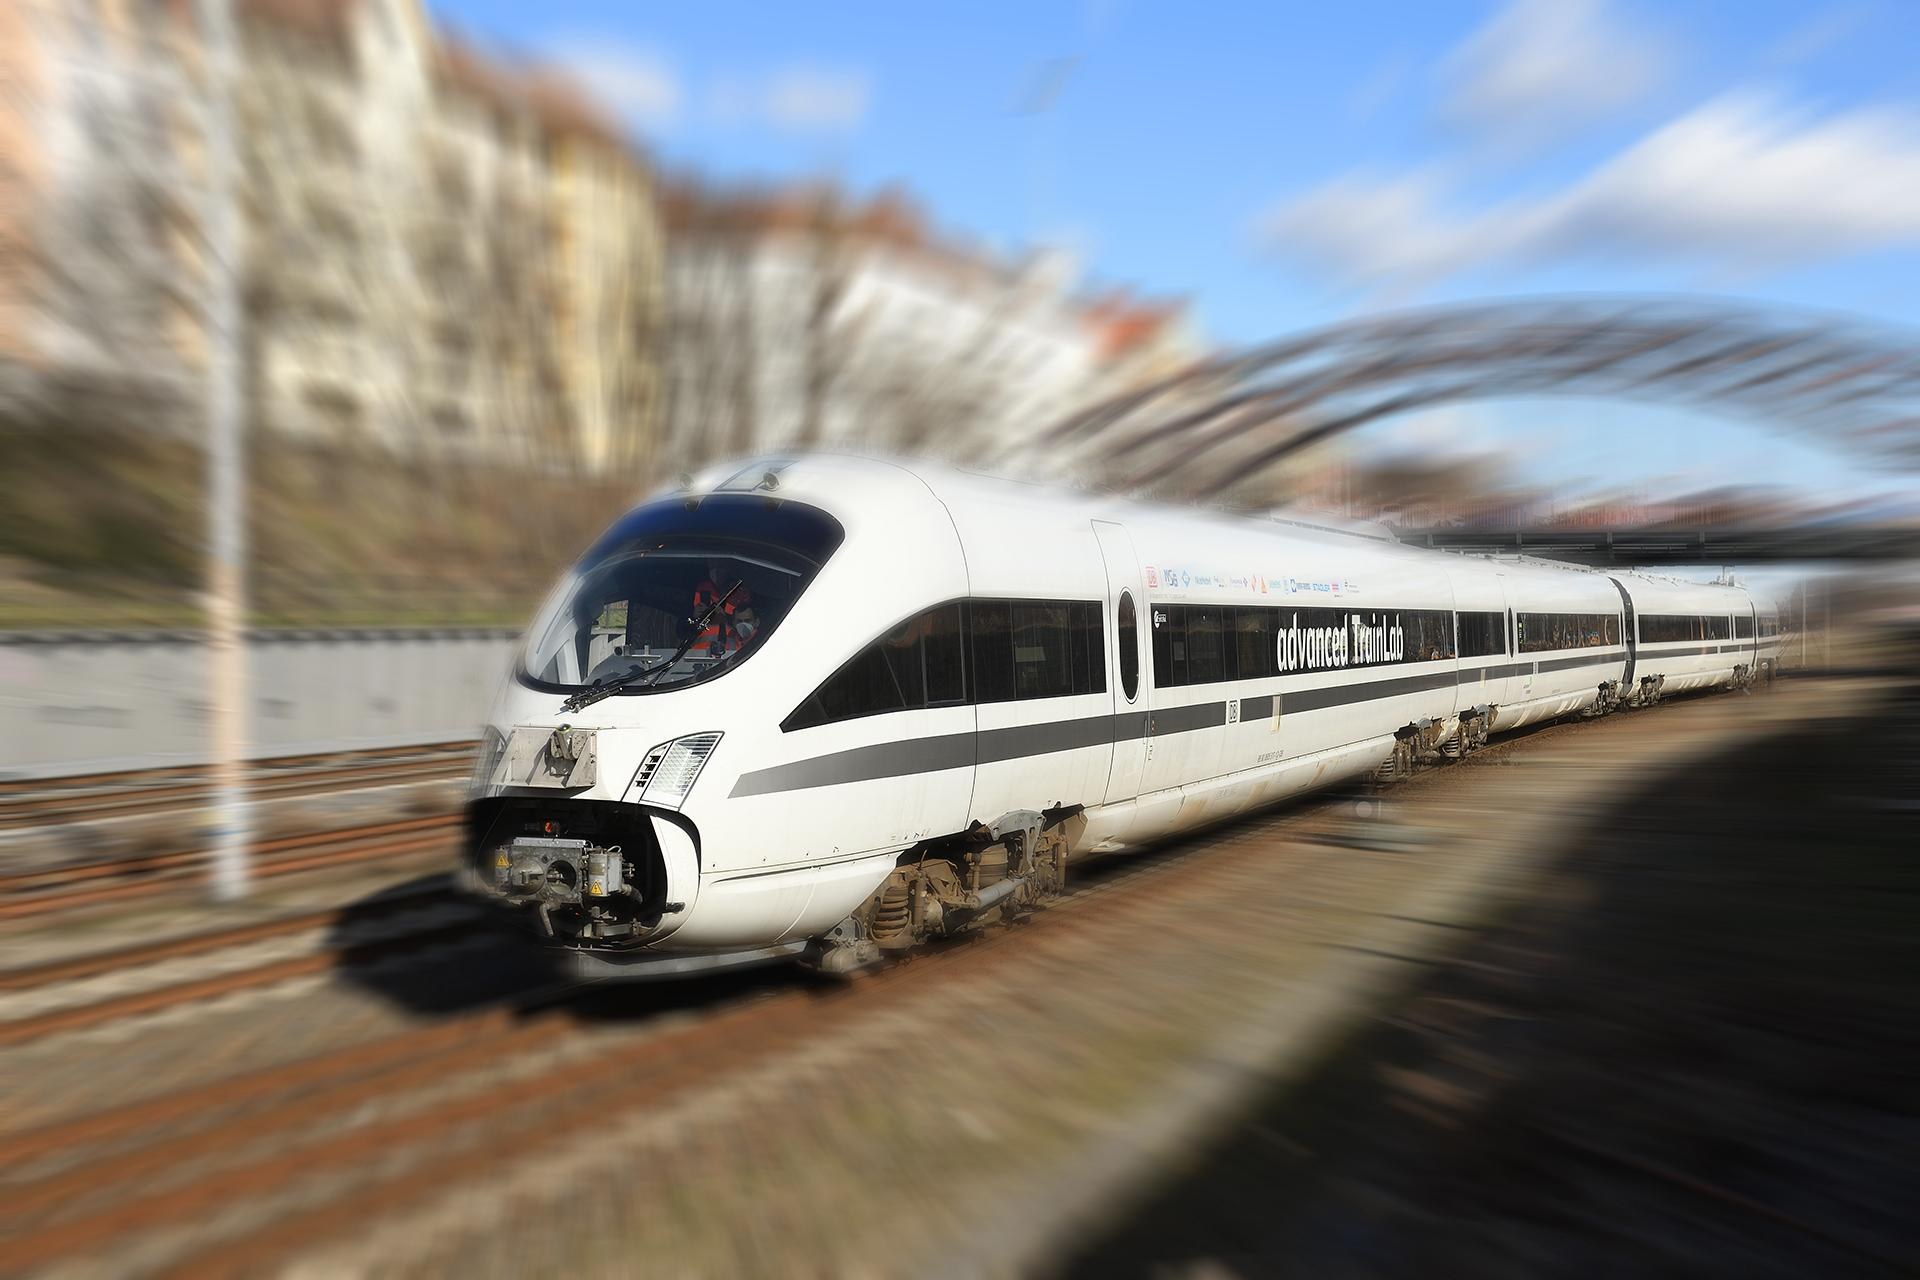 Messfahrt mit dem Hochgeschwindigkeitslabor "advanced TrainLab"